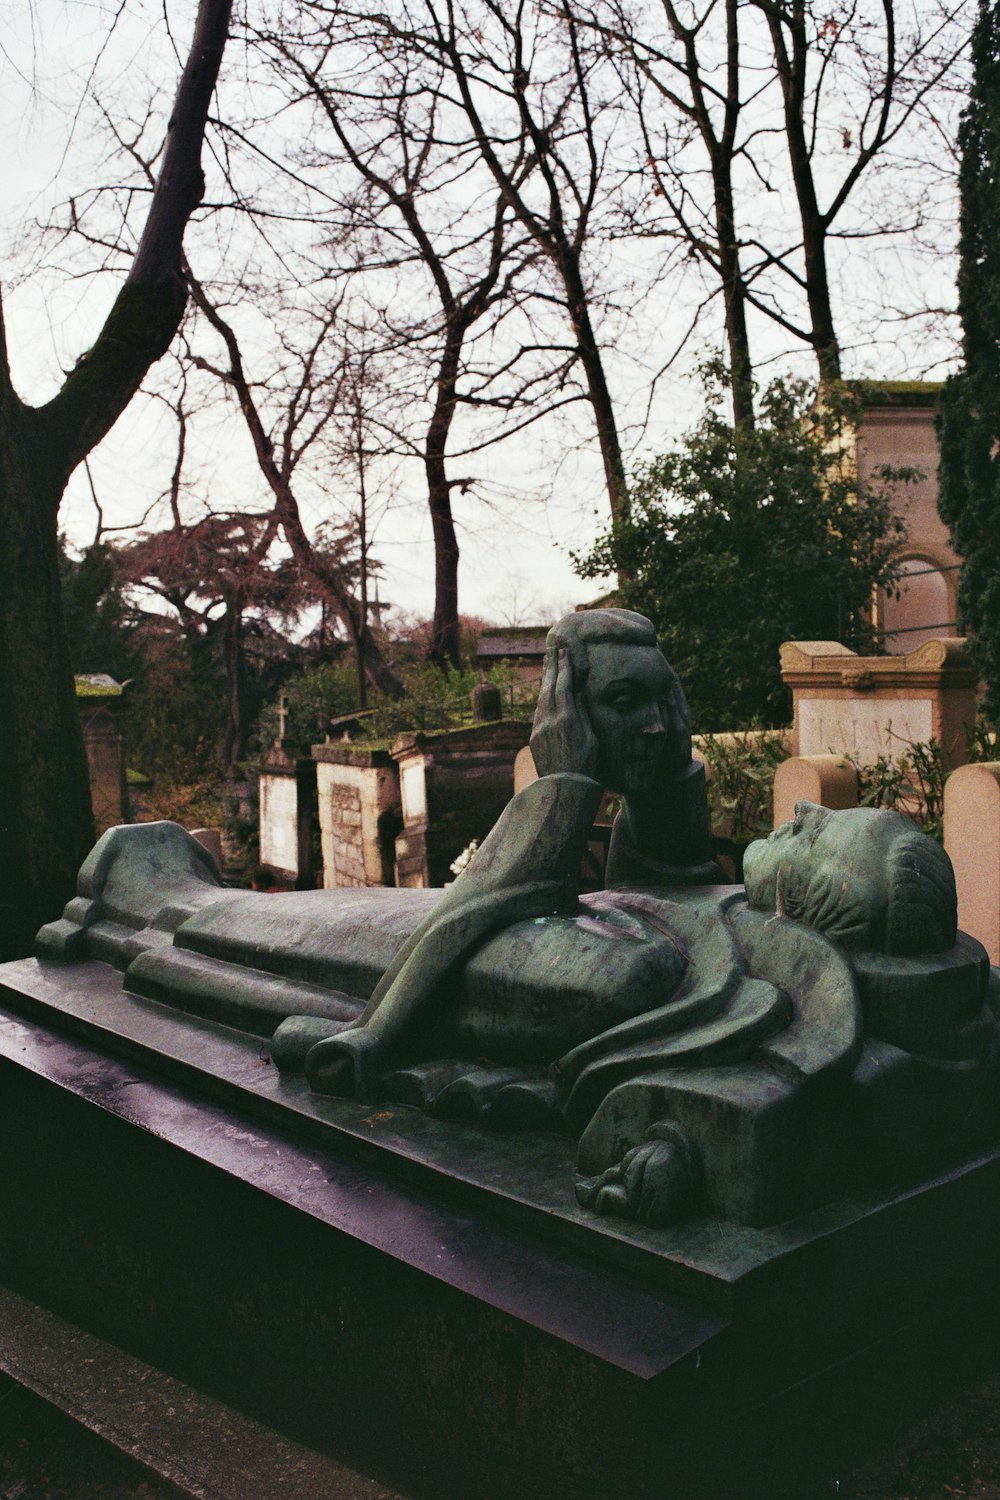 Una statua di un leone su una tomba in un cimitero